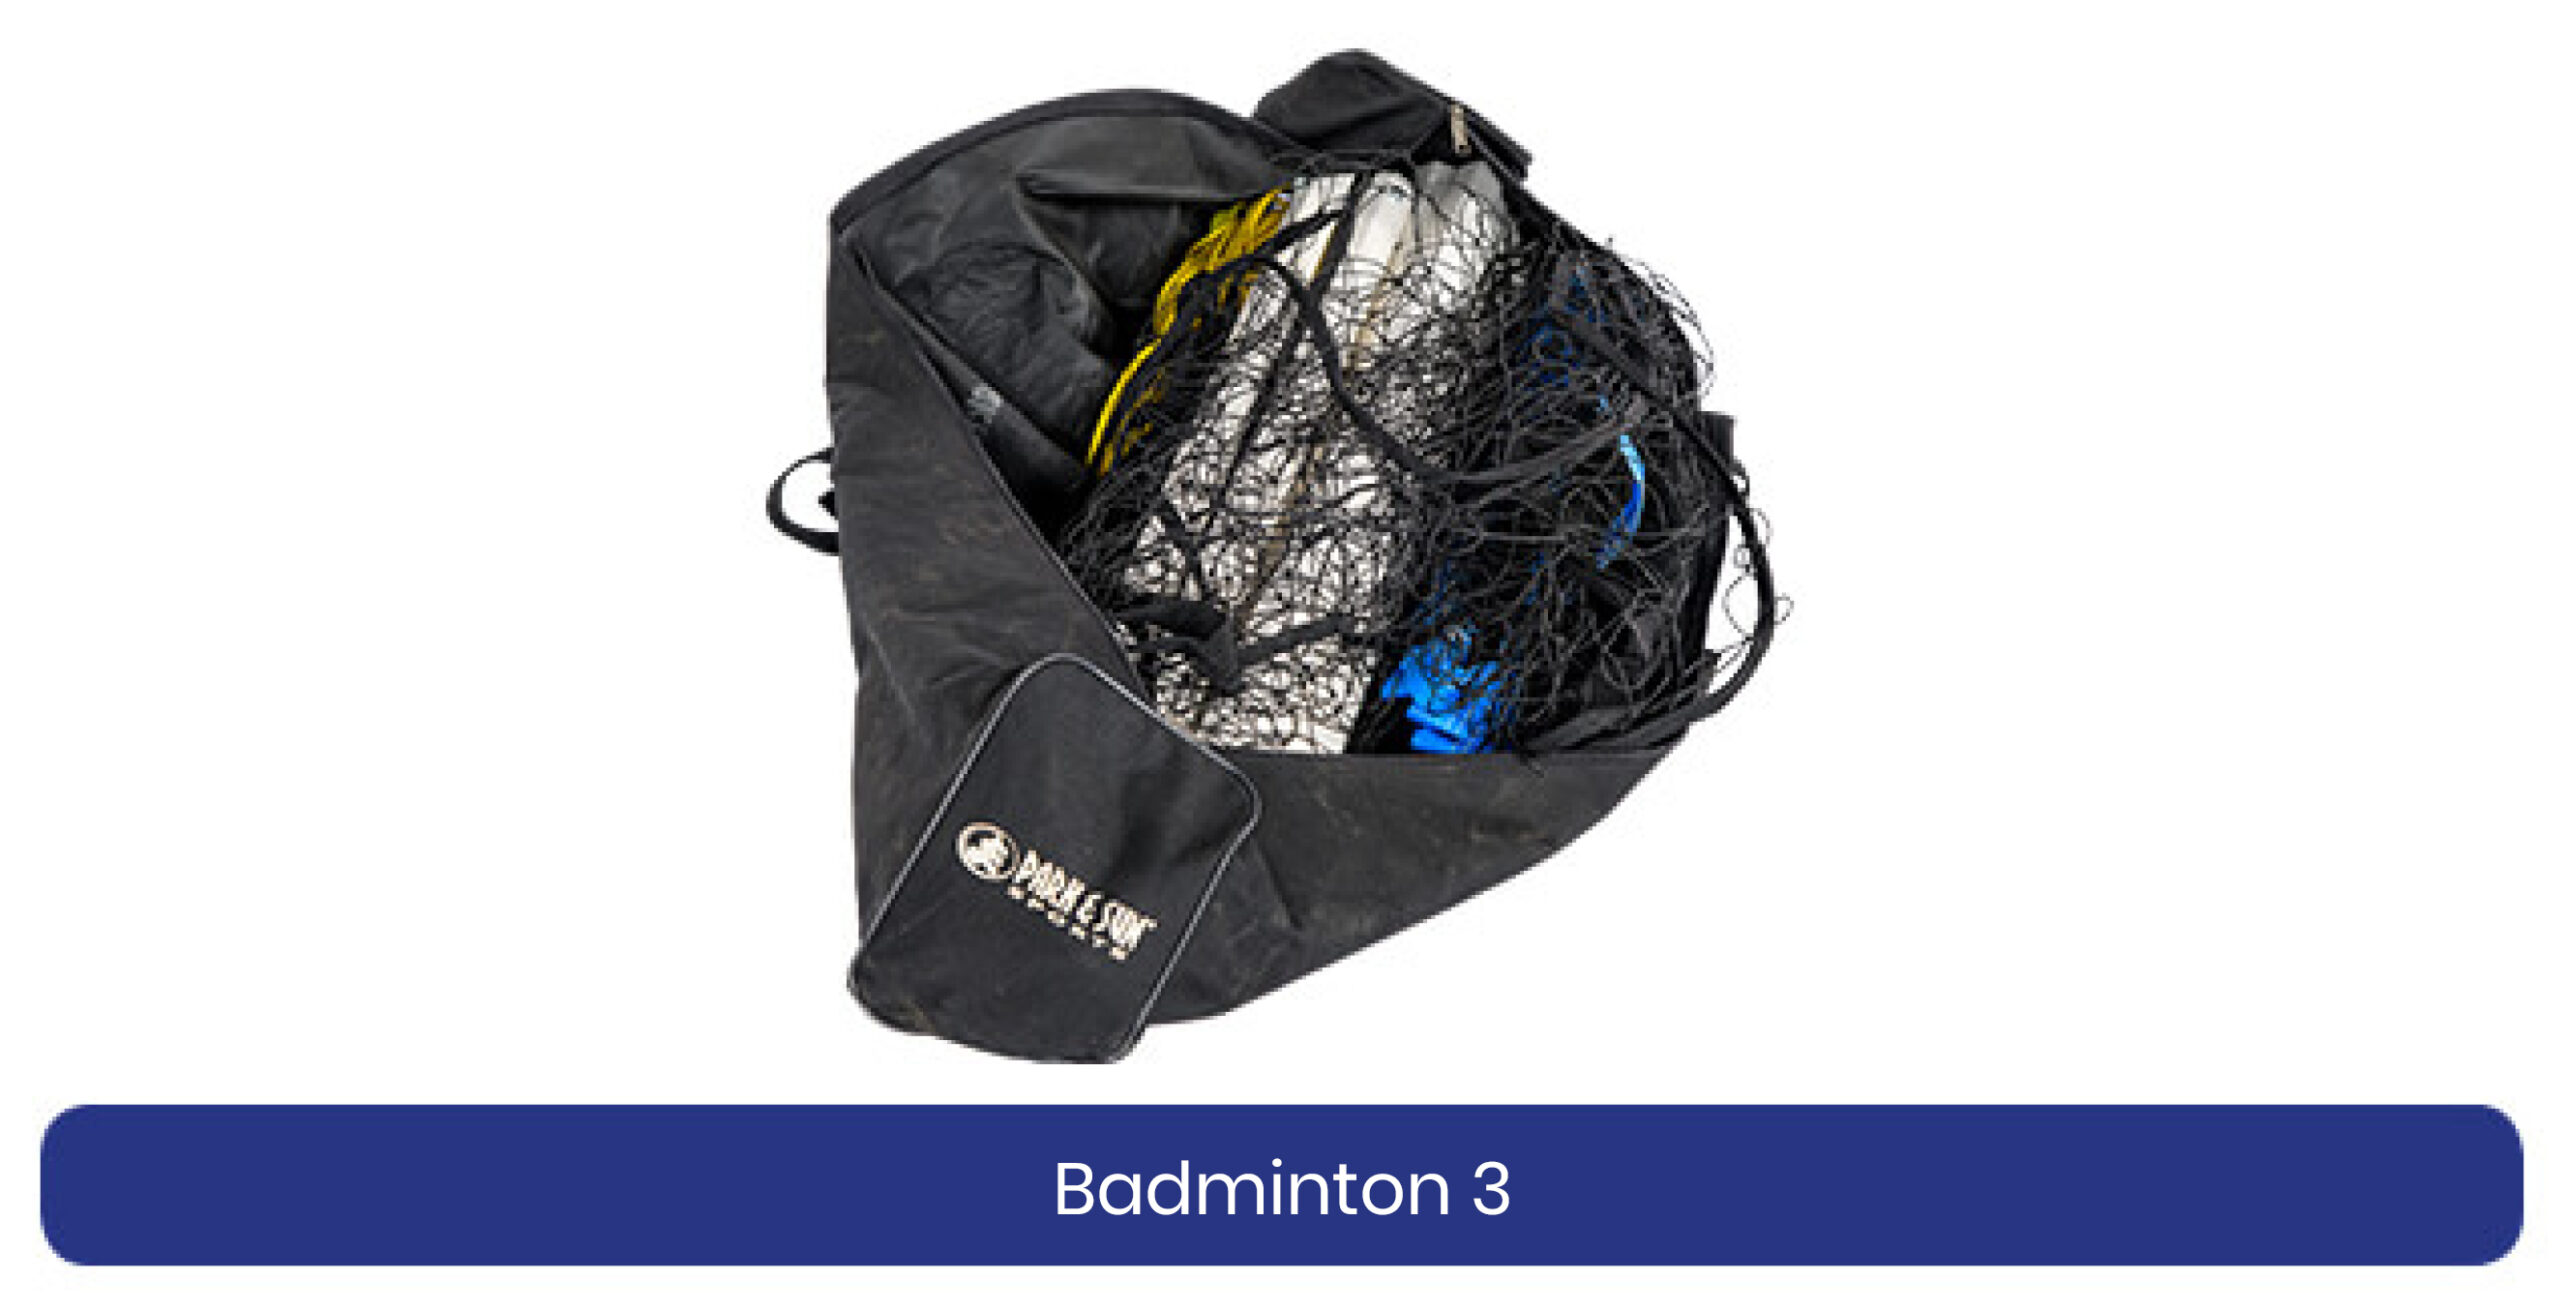 Badminton 3 lenen product